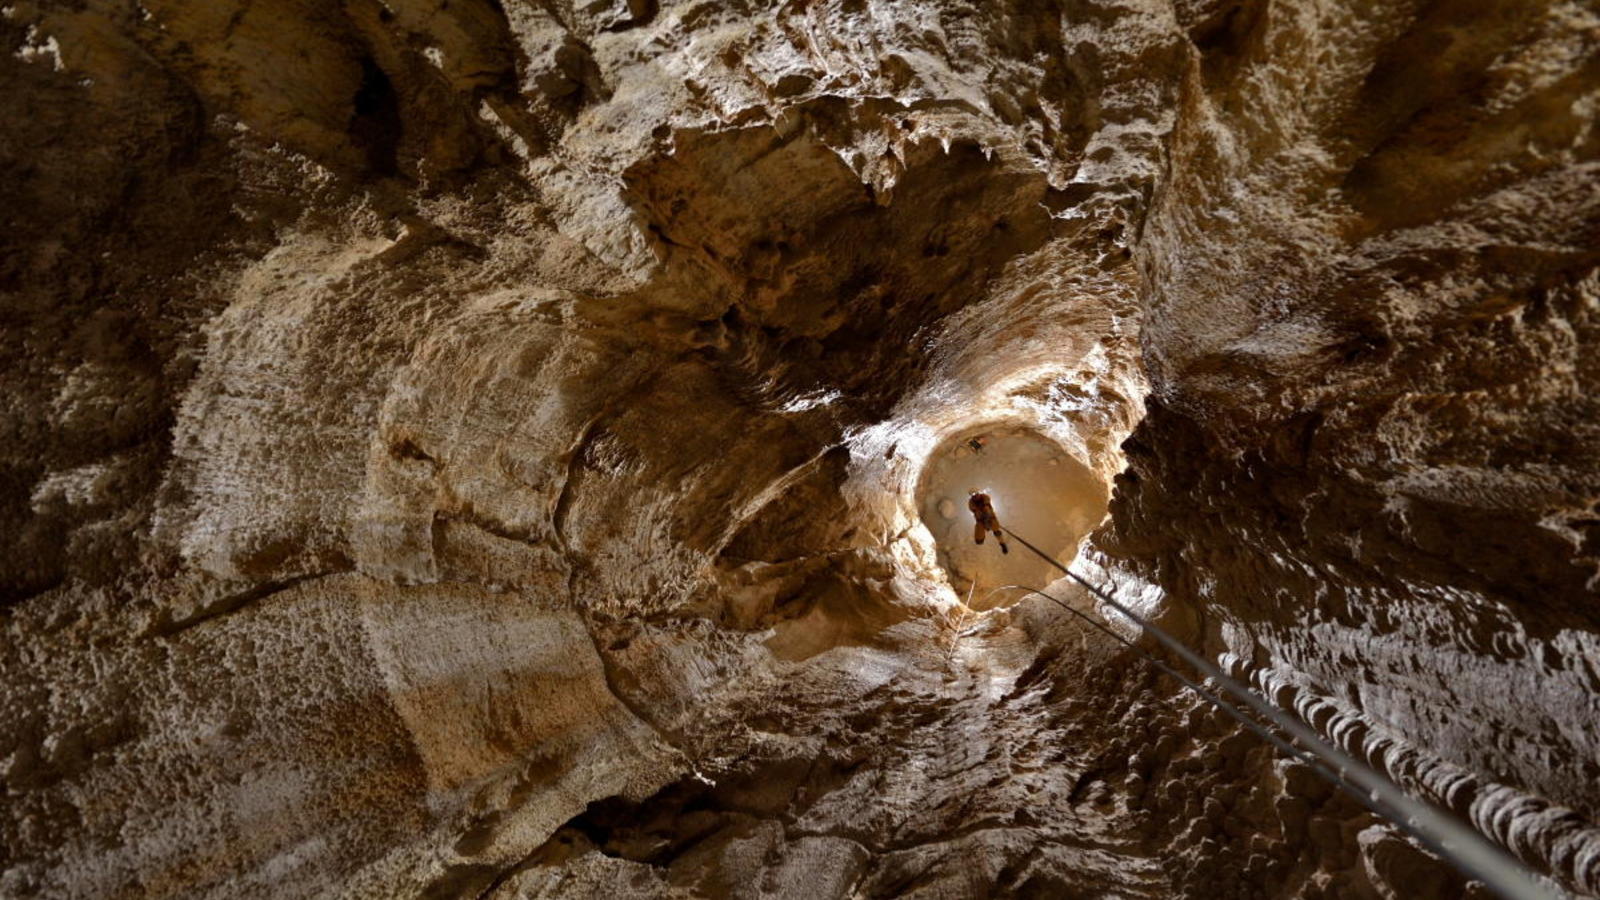 Espanhóis vão tentar entrar numa das grutas mais perigosas do mundo